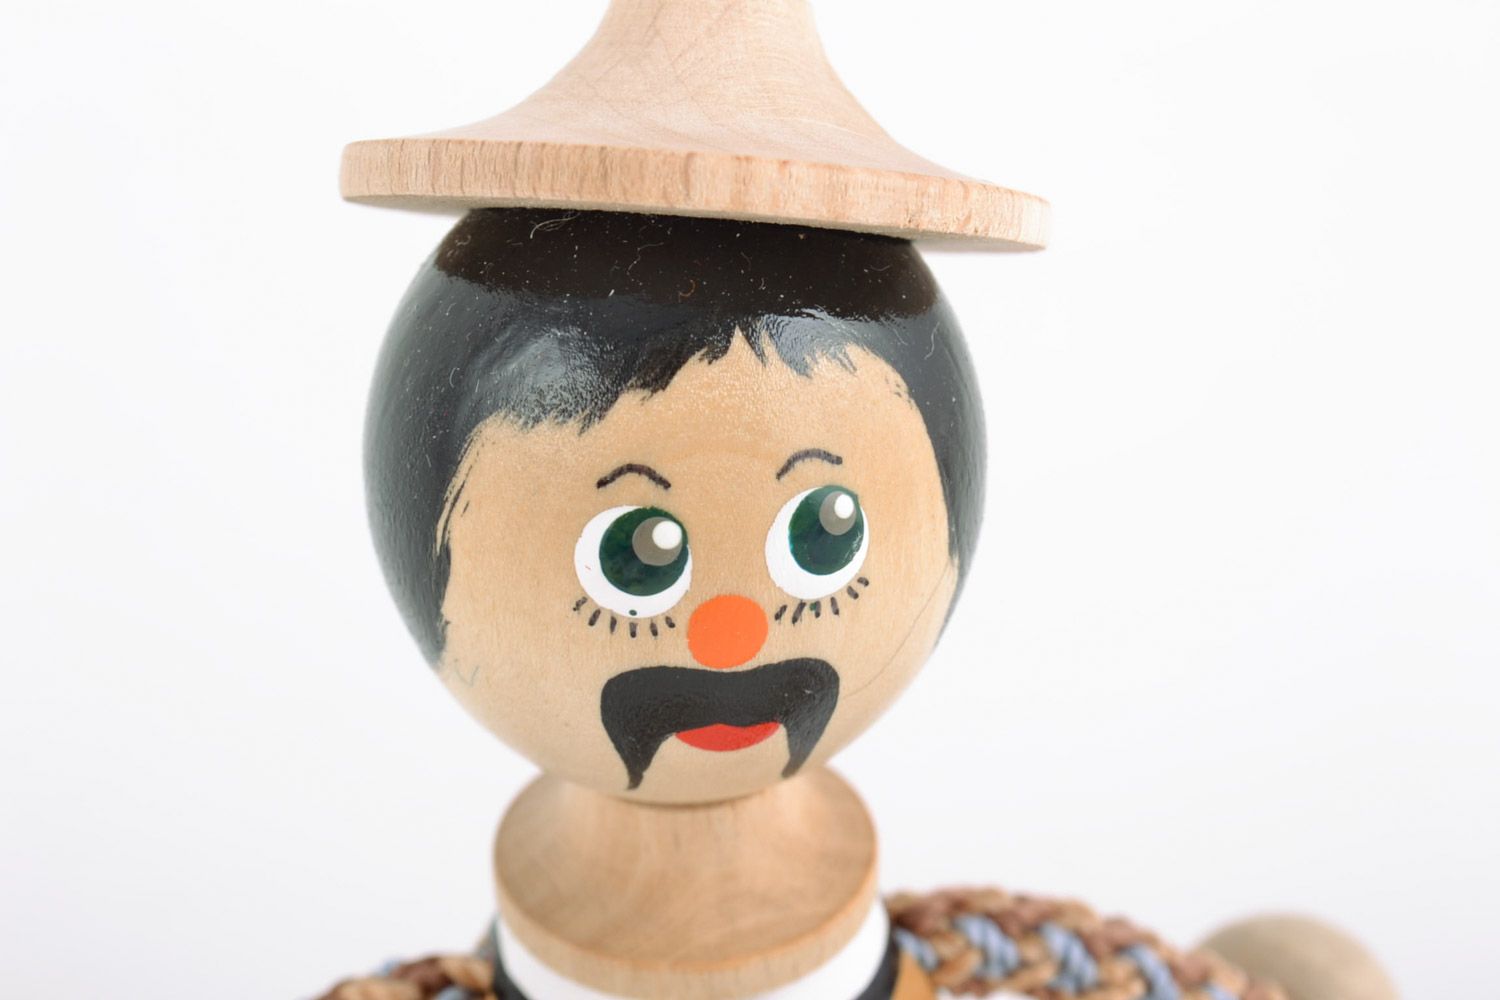 Деревянная эко игрушка ручной работы в виде парня в национальном украинском костюме фото 3